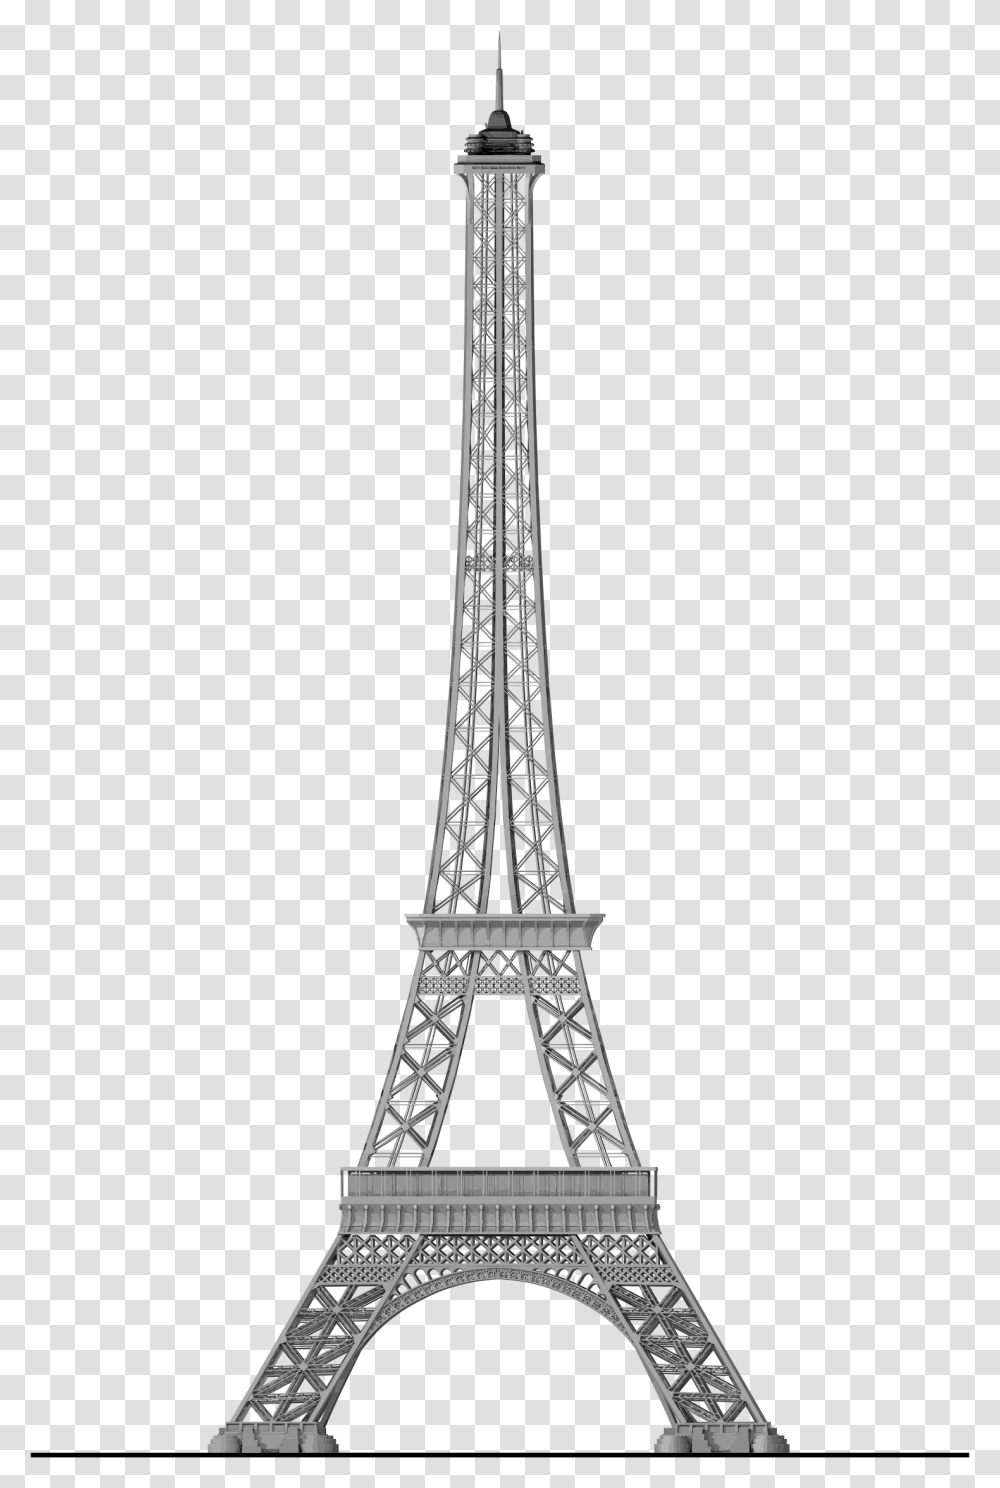 Eiffel Tower Silhouette Arc De Triomphe, Architecture, Building, Spire, Steeple Transparent Png